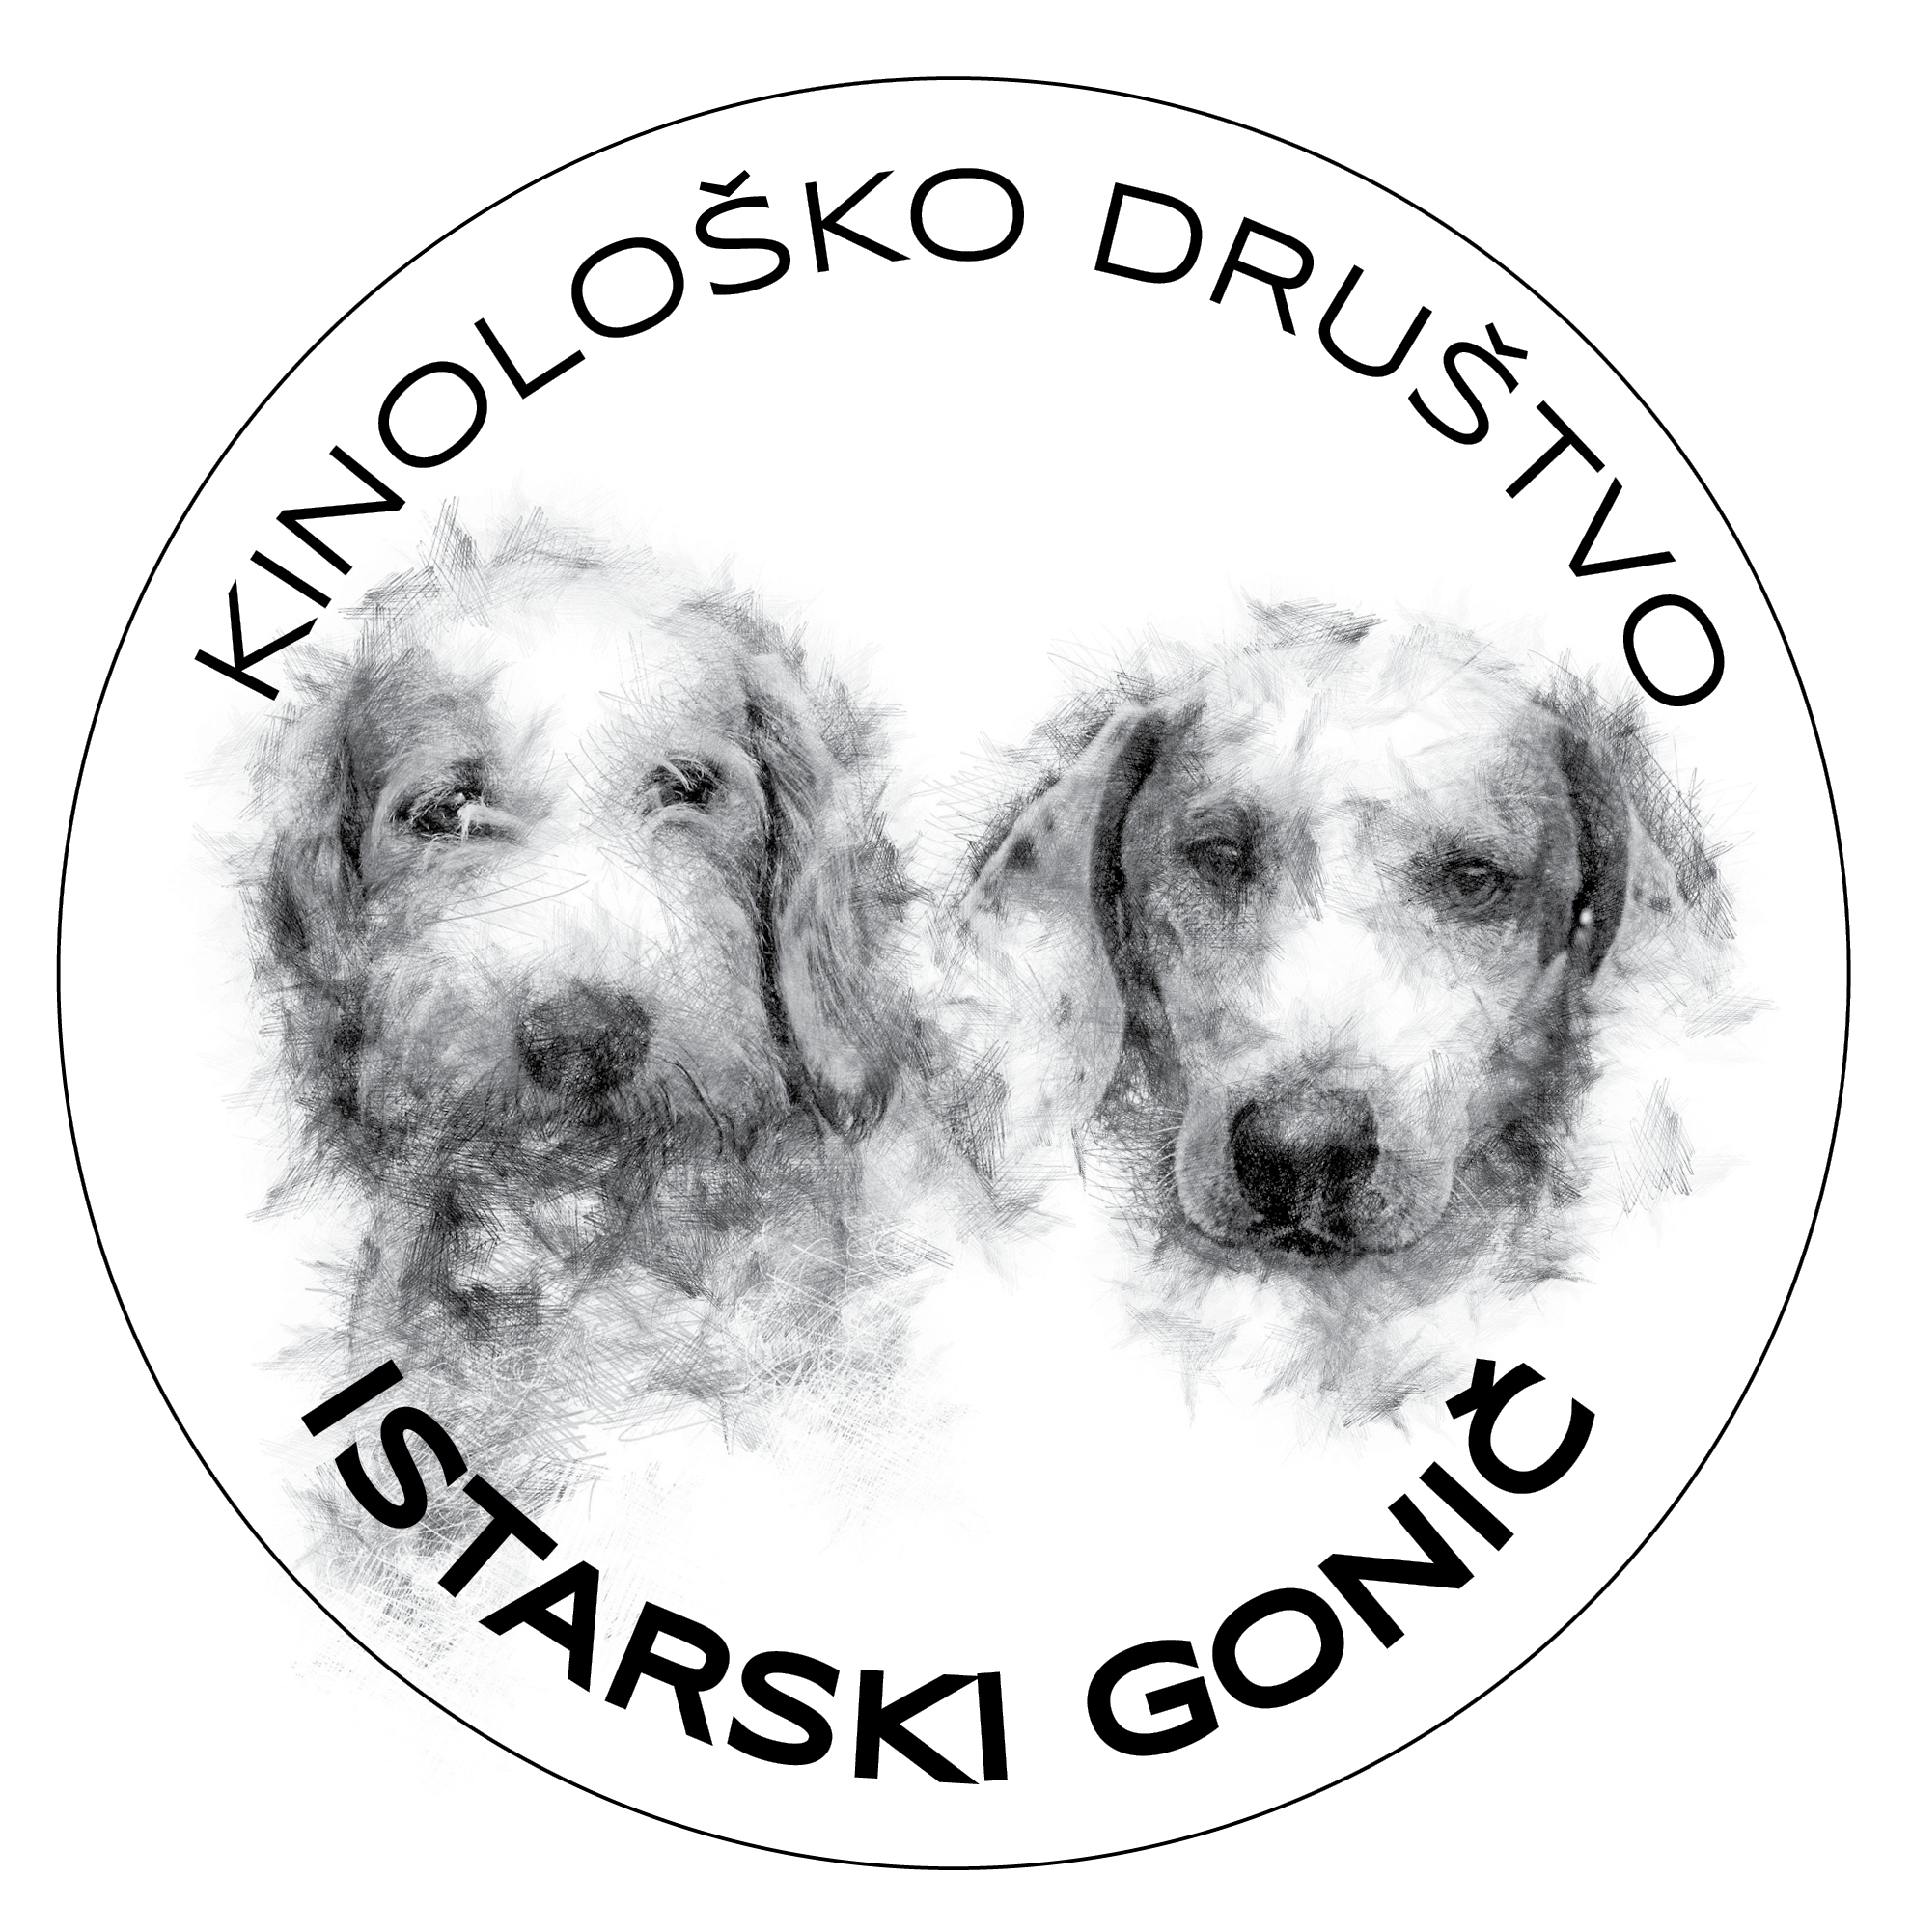 KD ISTARSKI GONIC logo